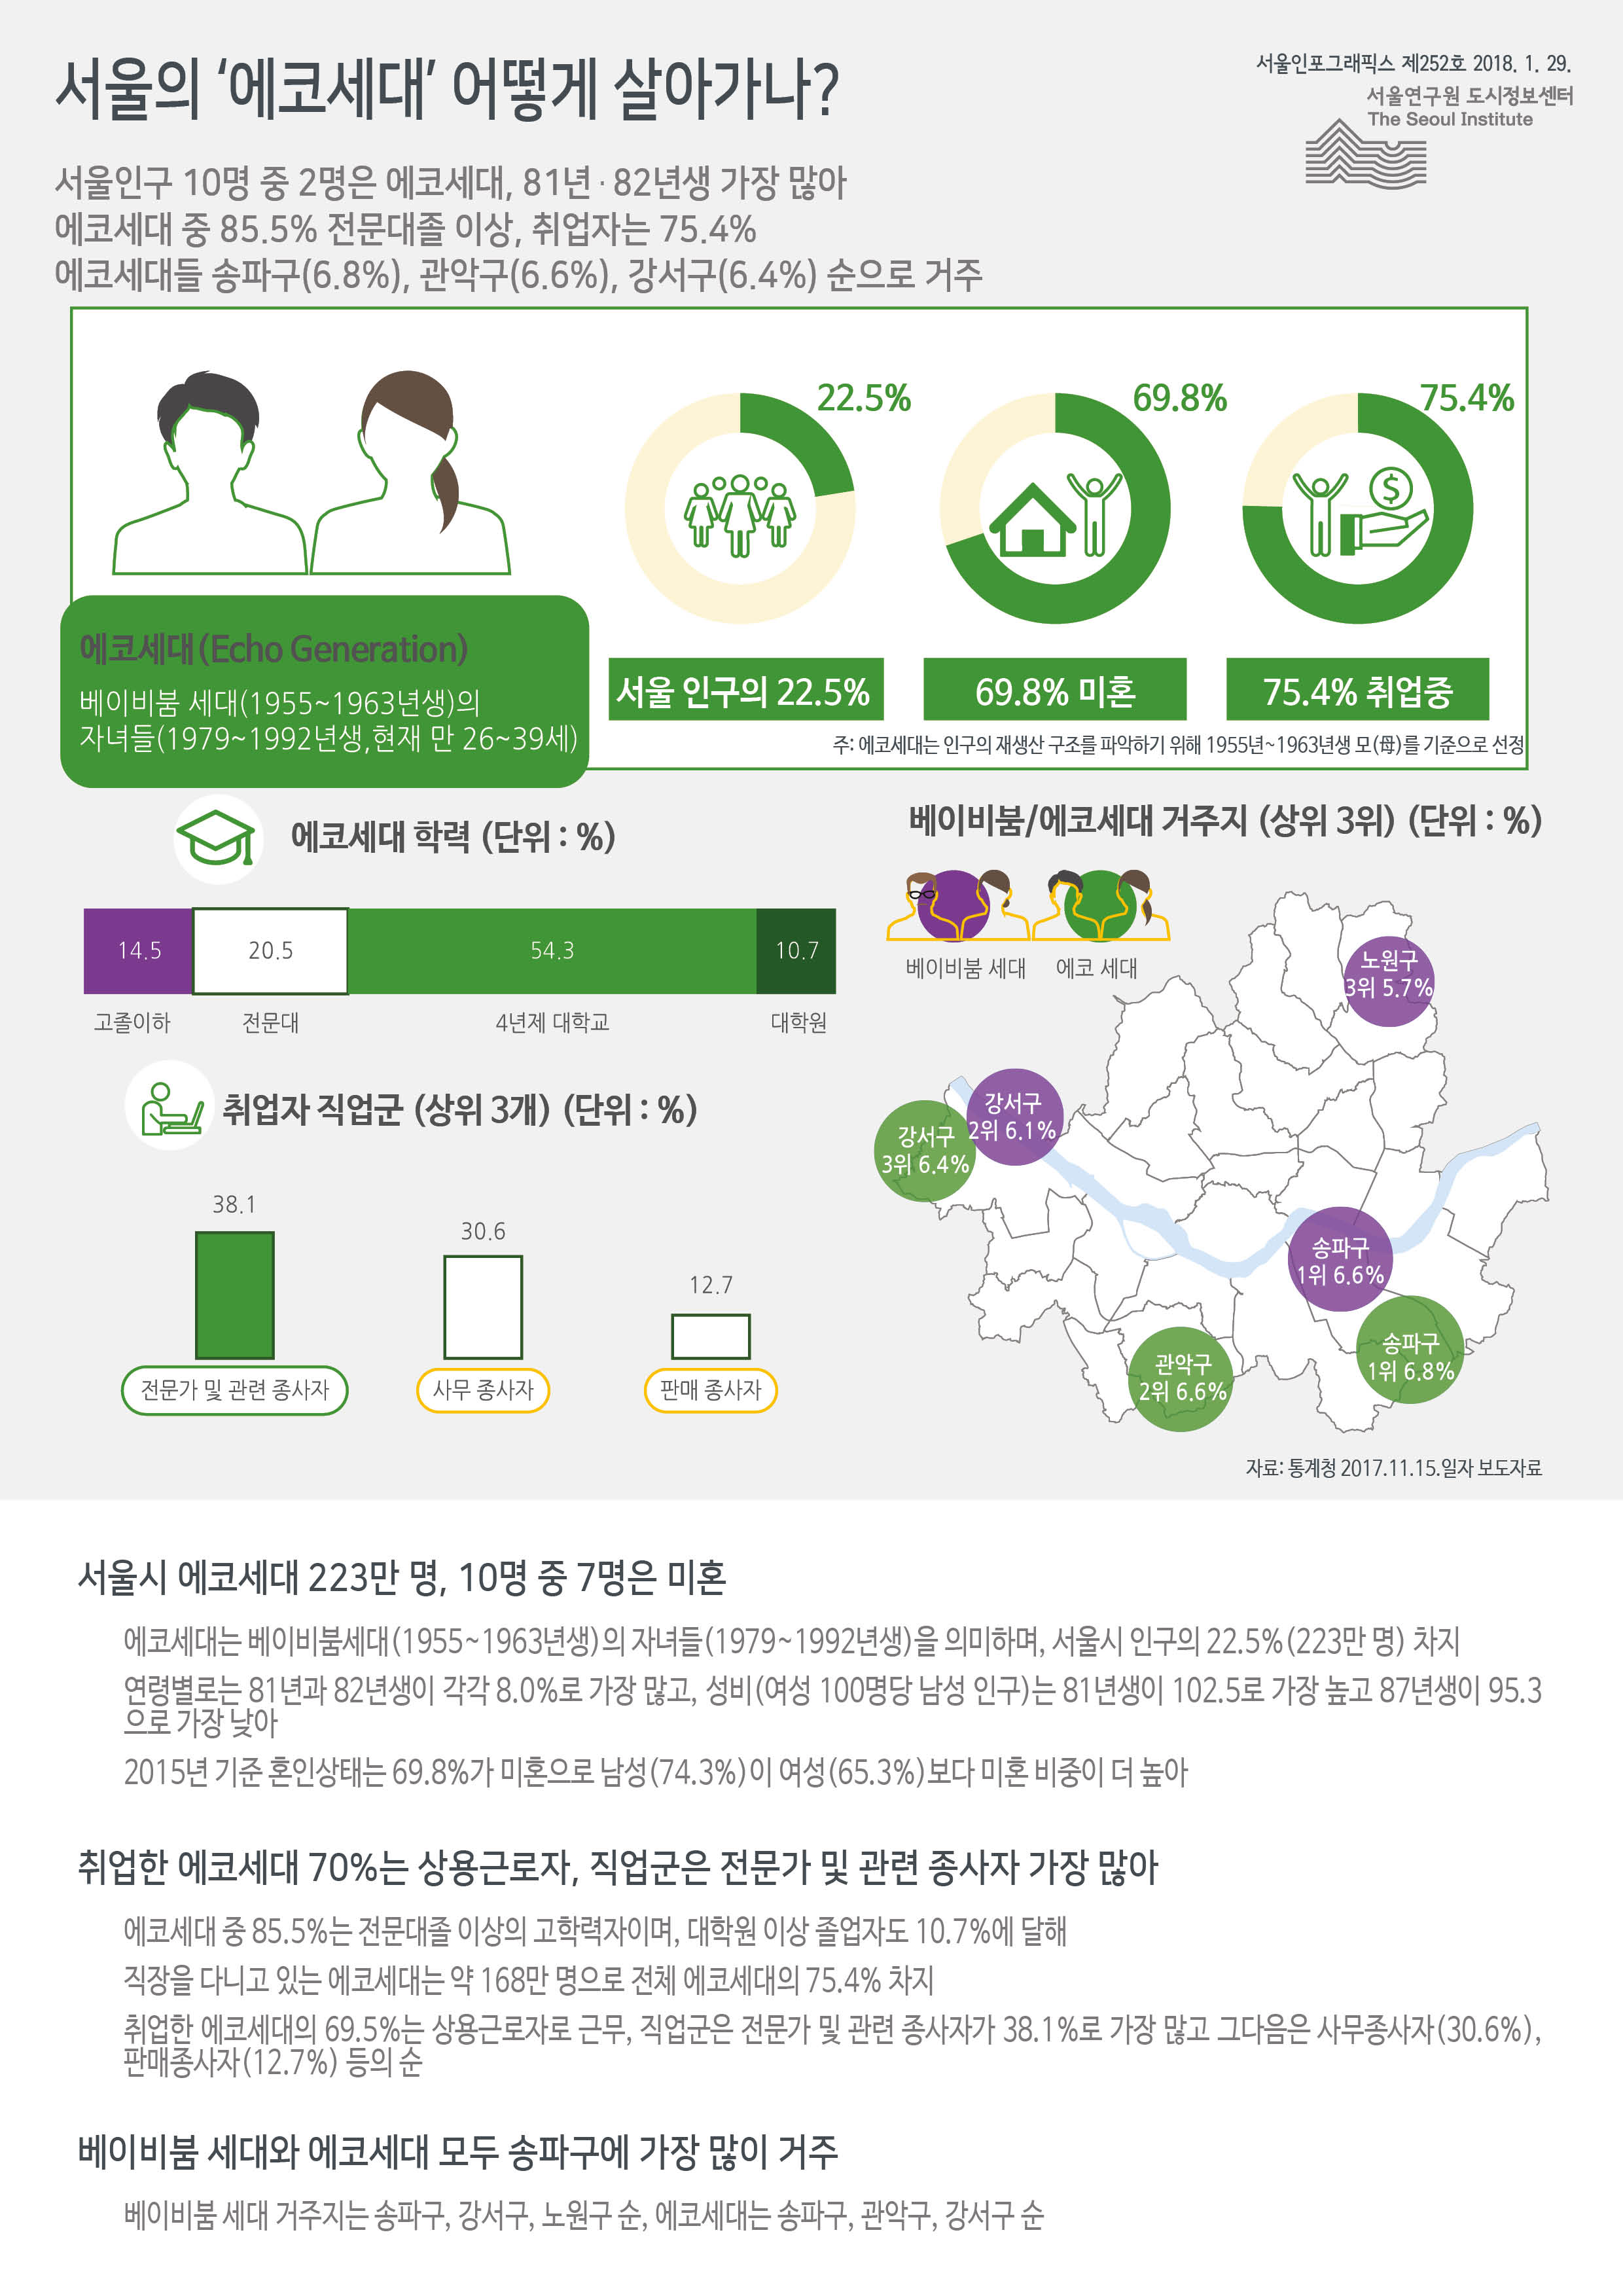 서울의 ‘에코세대’ 어떻게 살아가나?  서울인포그래픽스 제252호 2018년 1월 29일 울인구 10명 중 2명은 에코세대, 81년․82년생 가장 많음. 에코세대 중 85.5% 전문대졸 이상, 취업자는 75.4%. 에코세대들 송파구(6.8%), 관악구(6.6%), 강서구(6.4%) 순으로 거주함으로 정리될 수 있습니다. 인포그래픽으로 제공되는 그래픽은 하단에 표로 자세히 제공됩니다. 